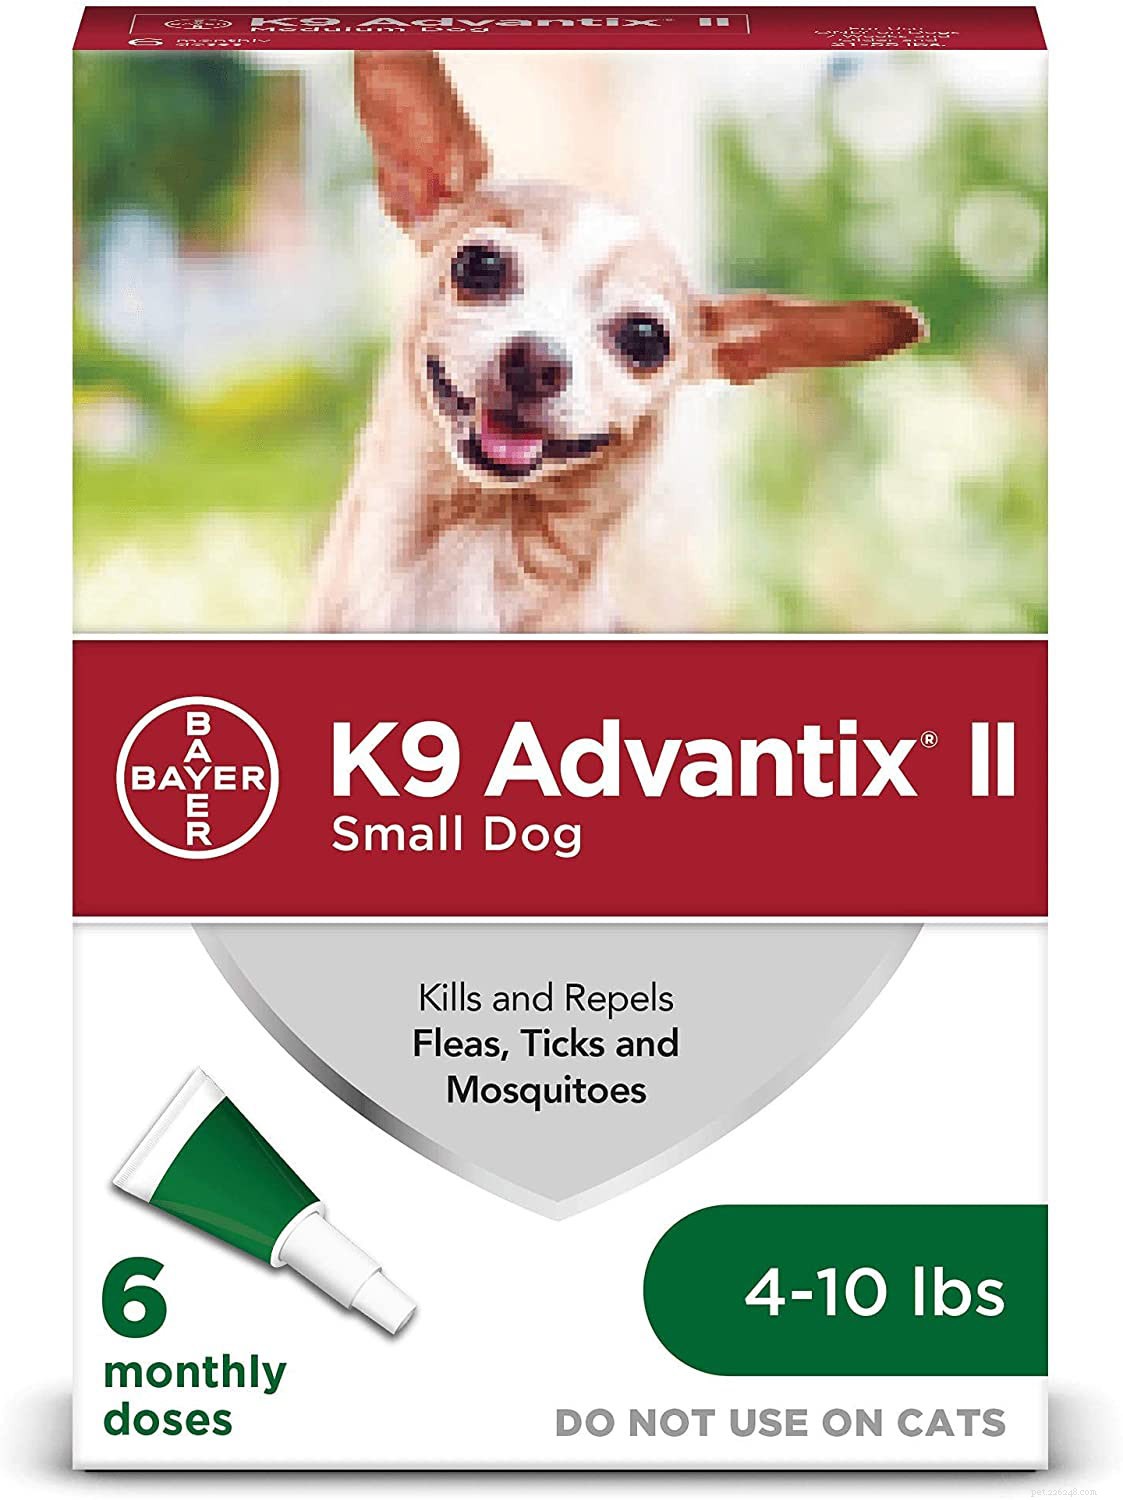 Muggenwerende middelen voor honden:de 7 beste natuurlijke alternatieven 